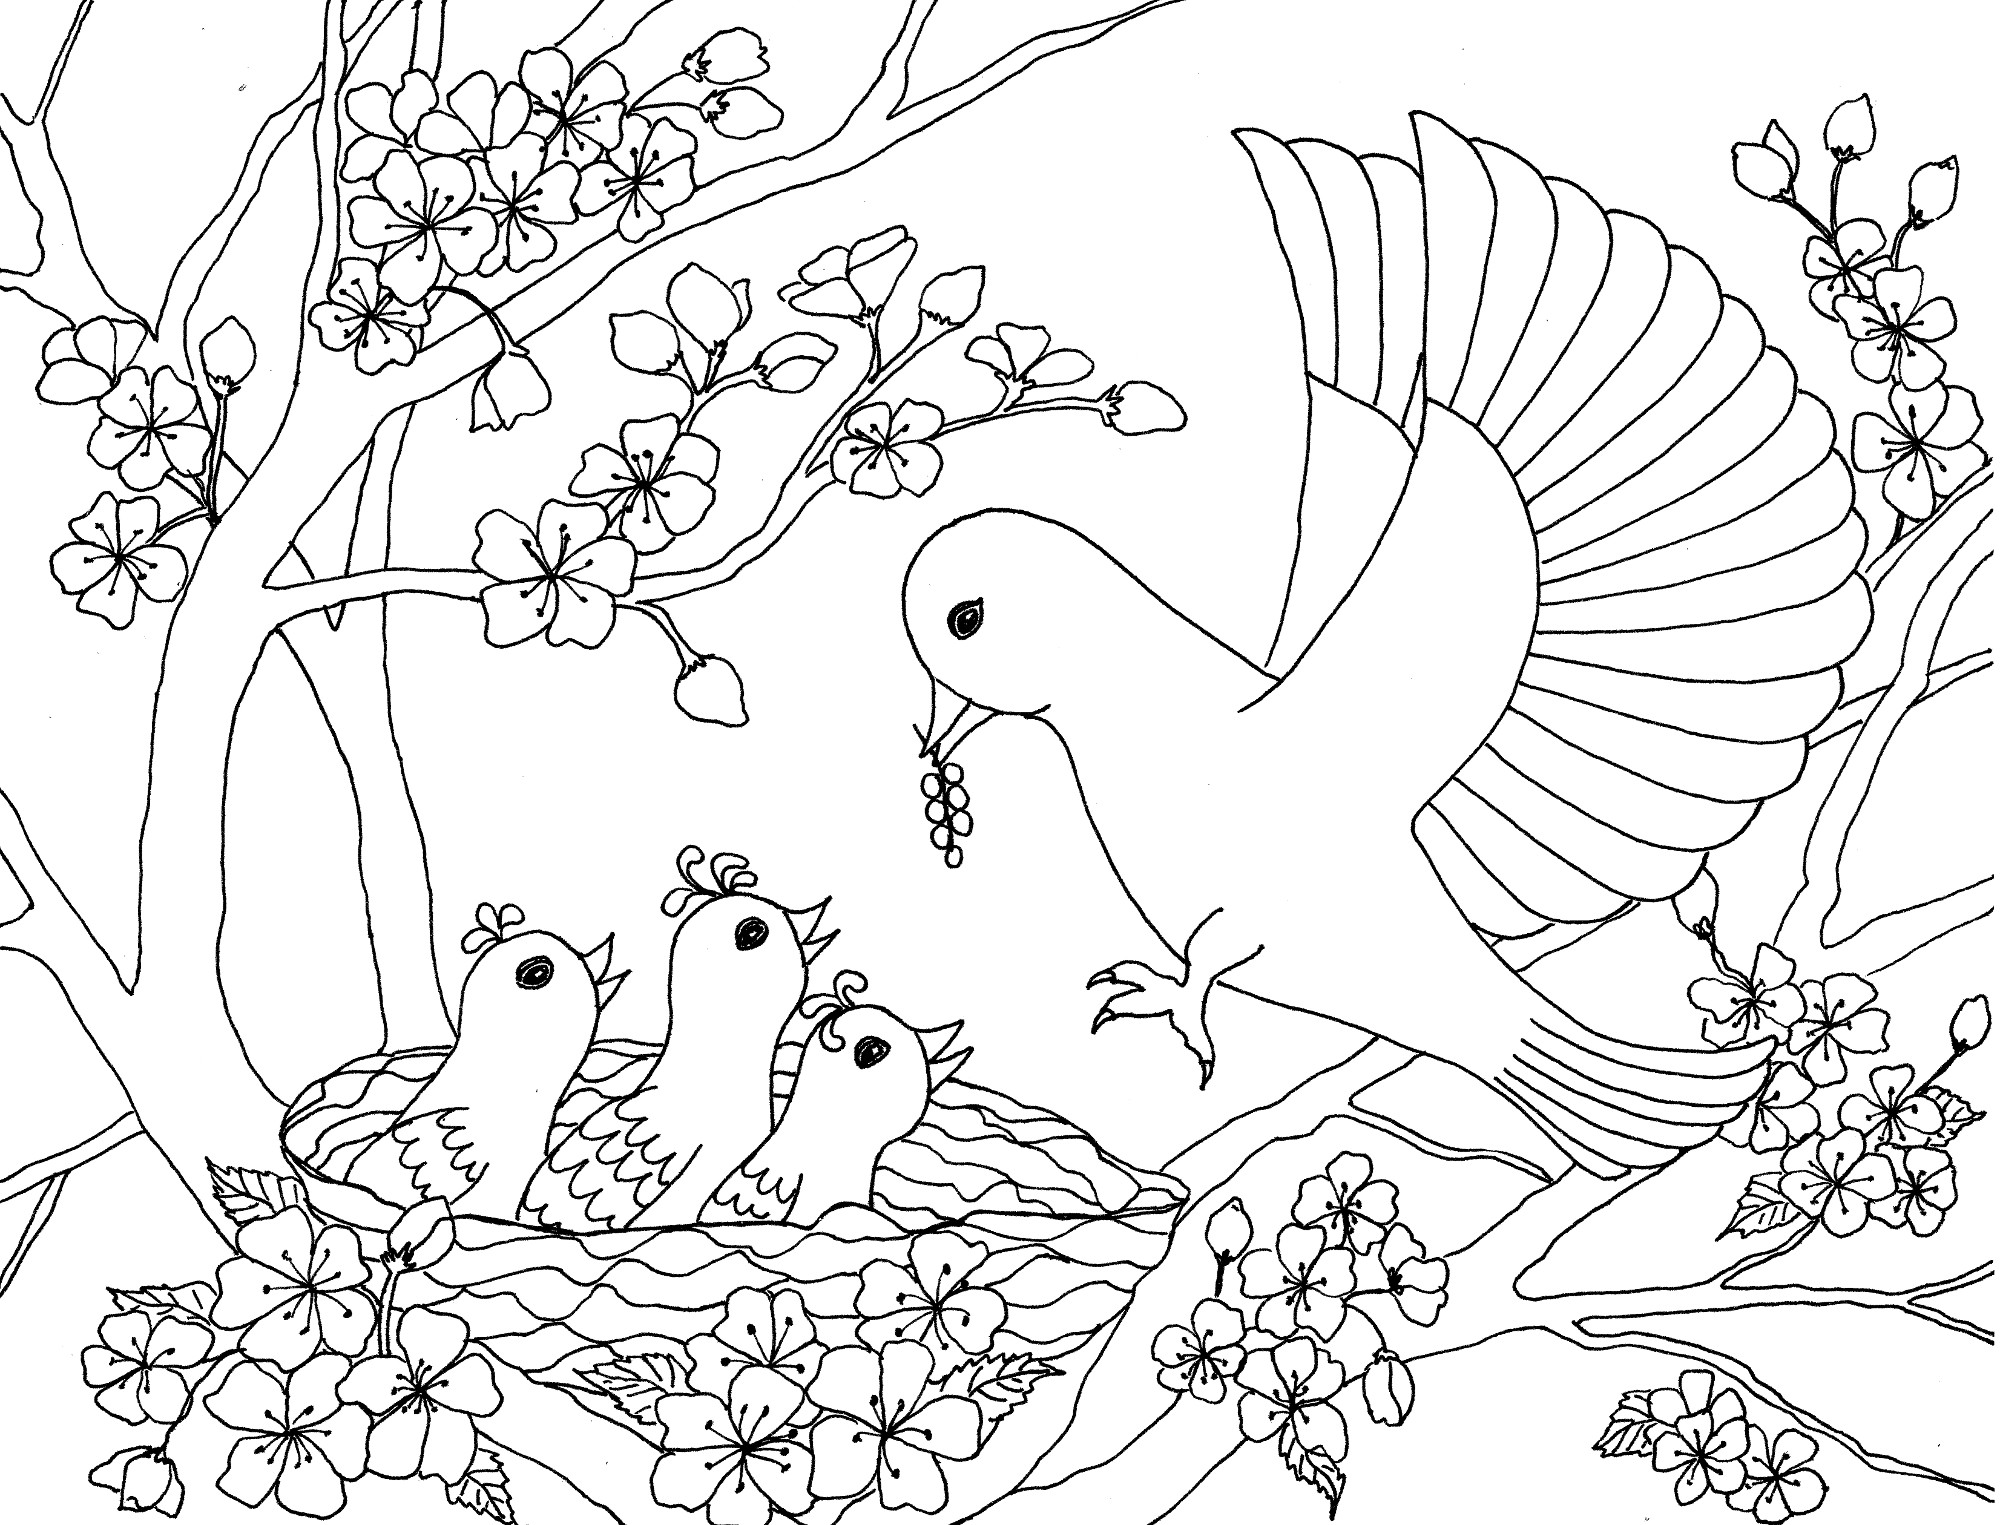 Bird coloring. Птицы. Раскраска. Птичка раскраска. Птицы раскраска для детей. Раскраска природа.